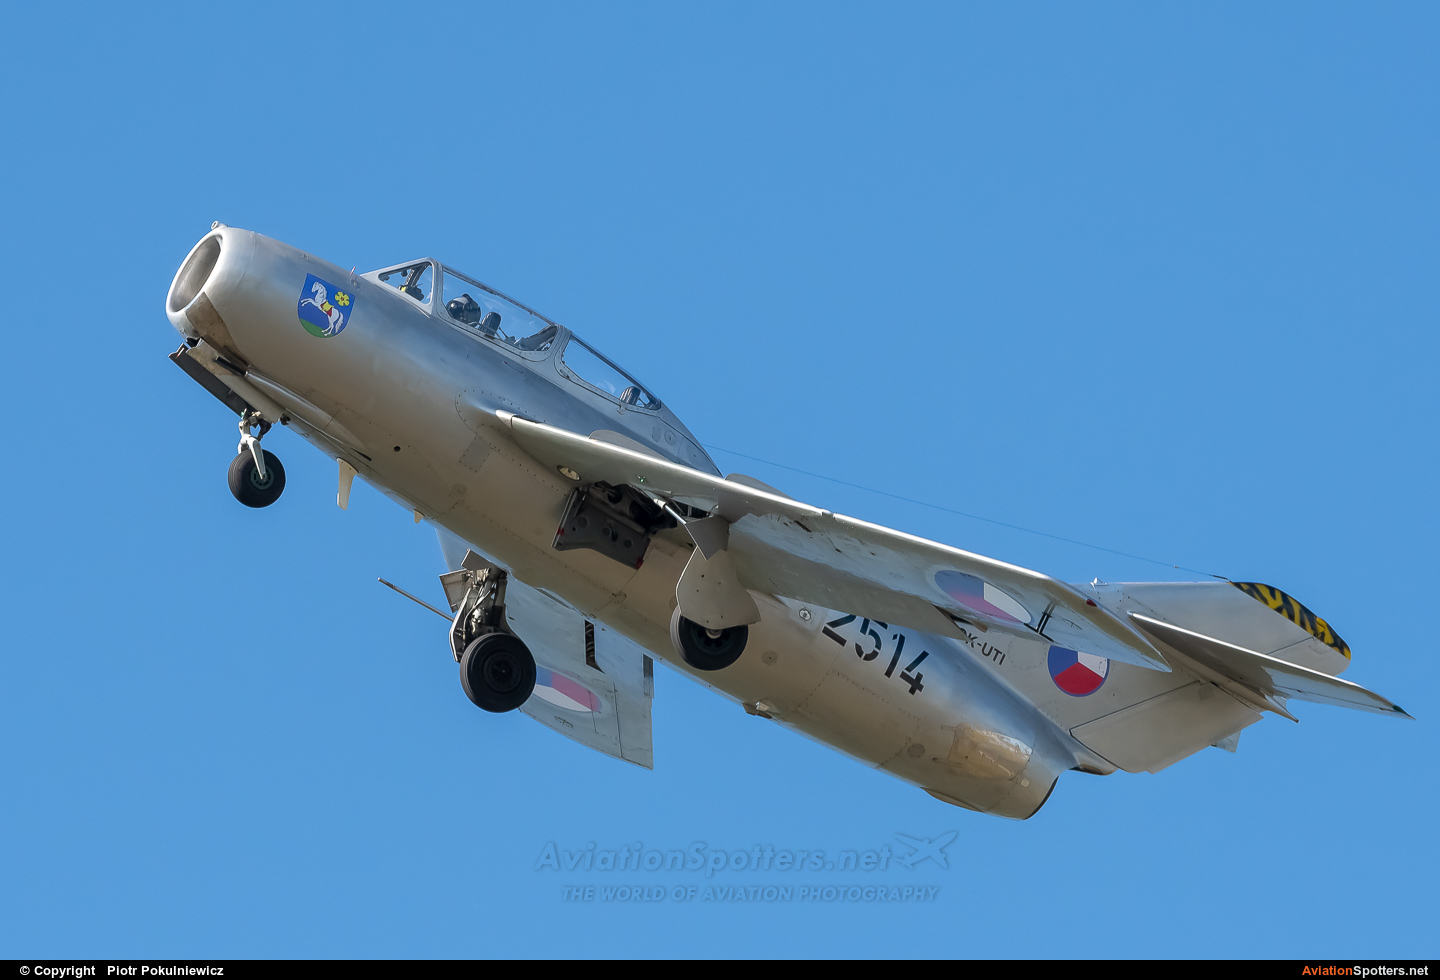   MiG-15 UTI  (2514) By Piotr Pokulniewicz (Piciu)